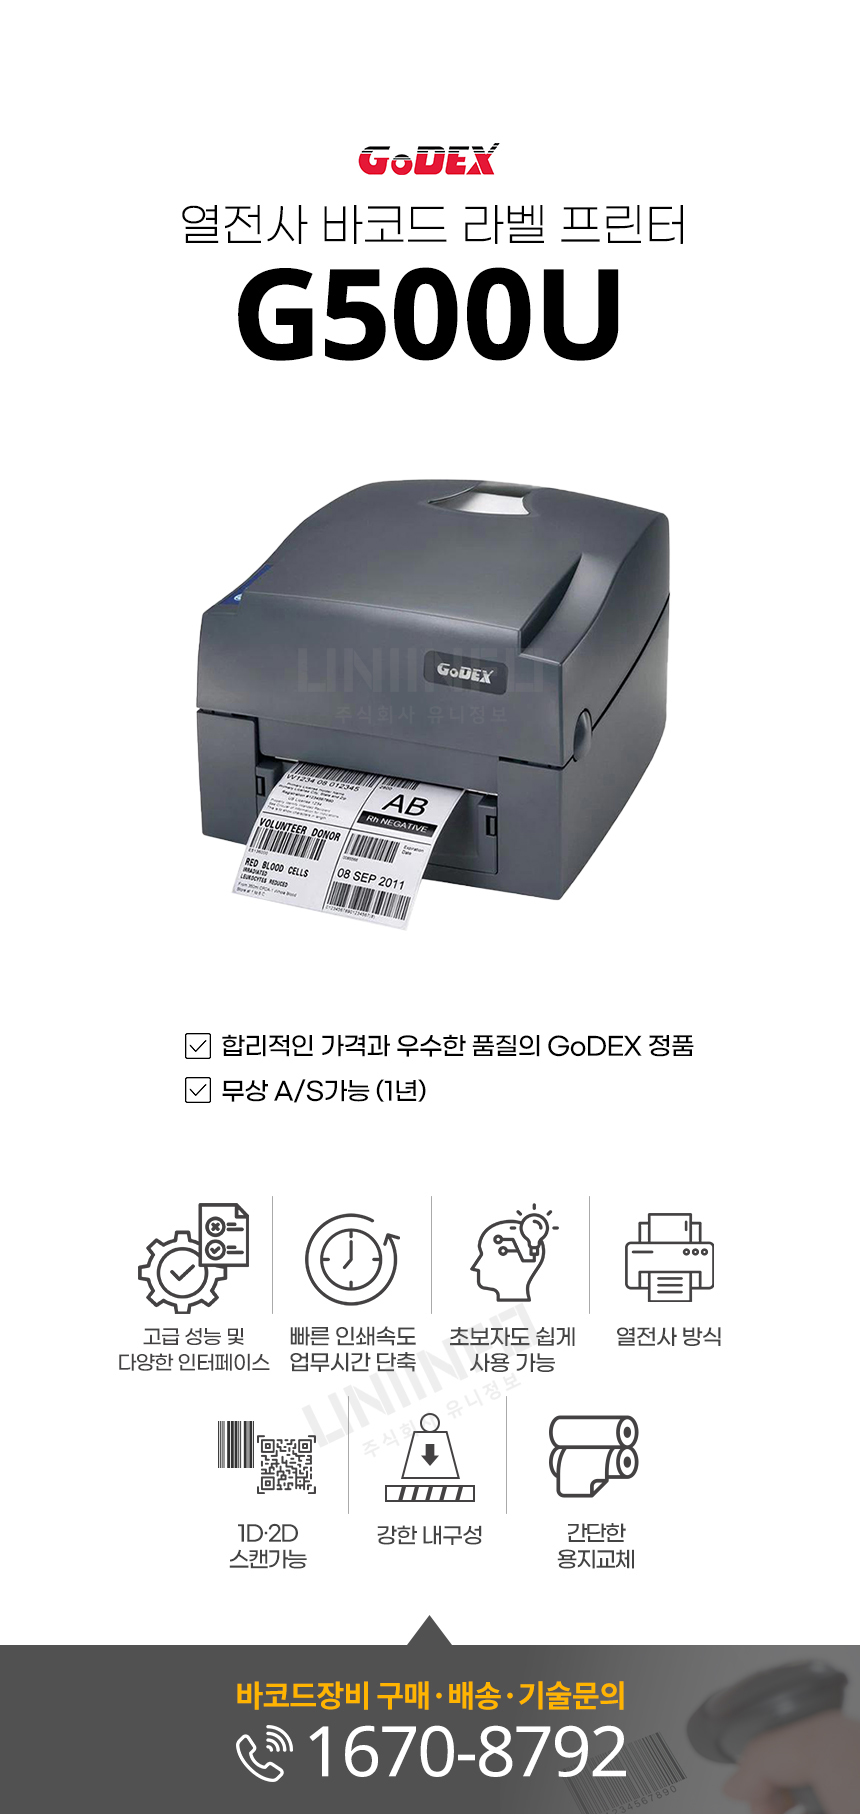 고덱스 열전사 바코드 라벨 프린터 g500u 우수한 품질 godex 정품 무상 as 1년 가능 간단한 용지교체 내구성 1d 2d 인쇄가능